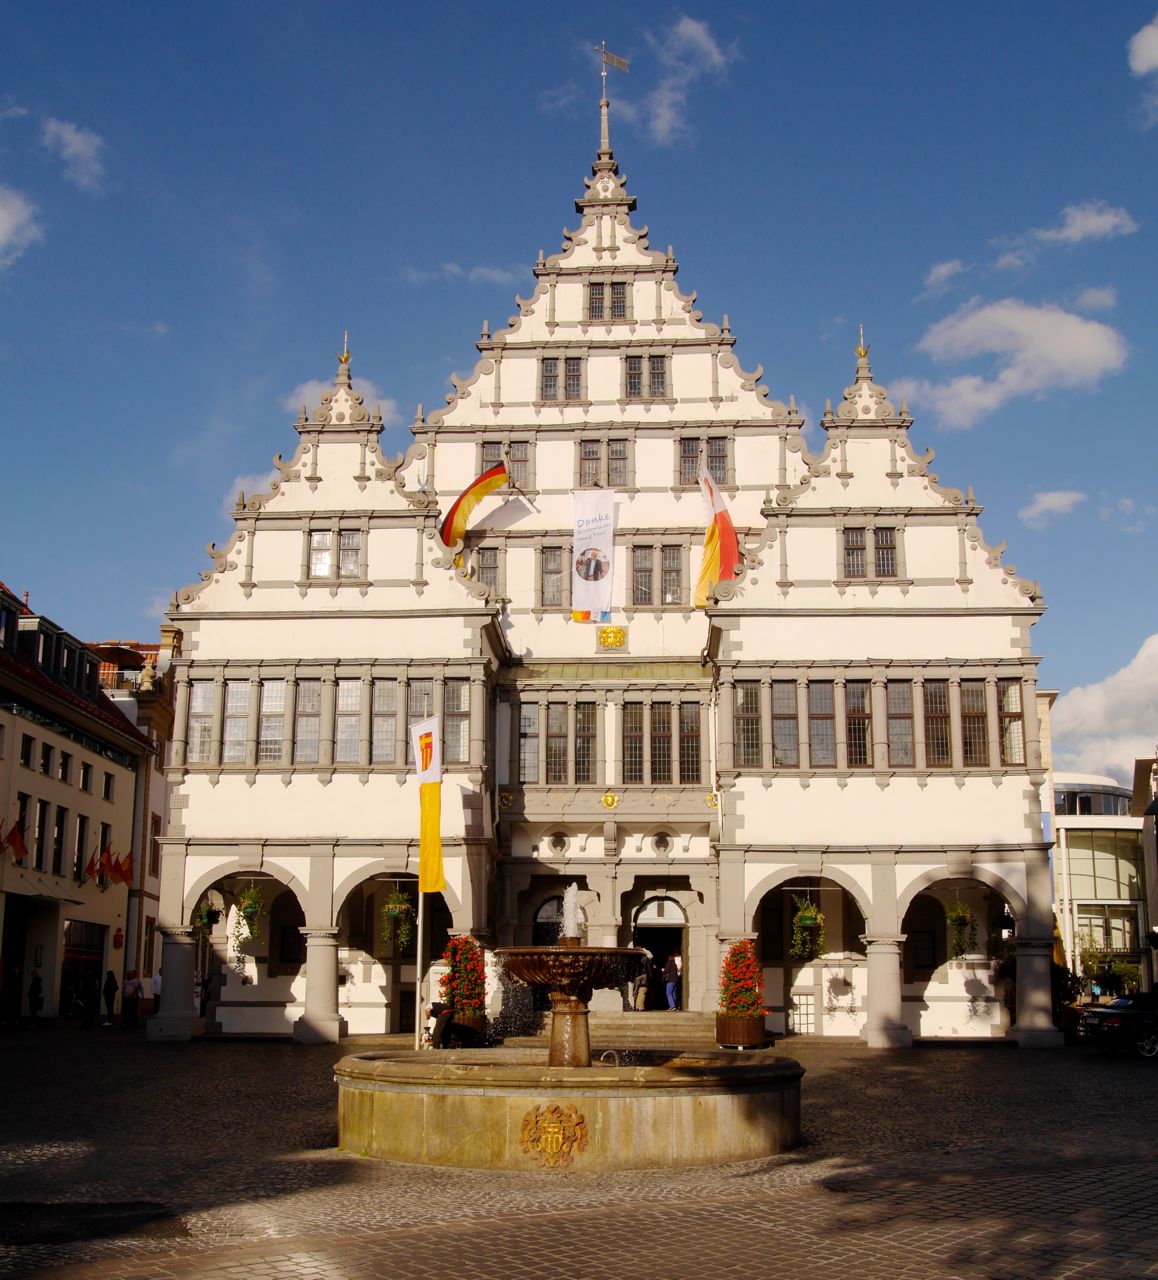 Ein Bild vom Rathaus in Paderborn